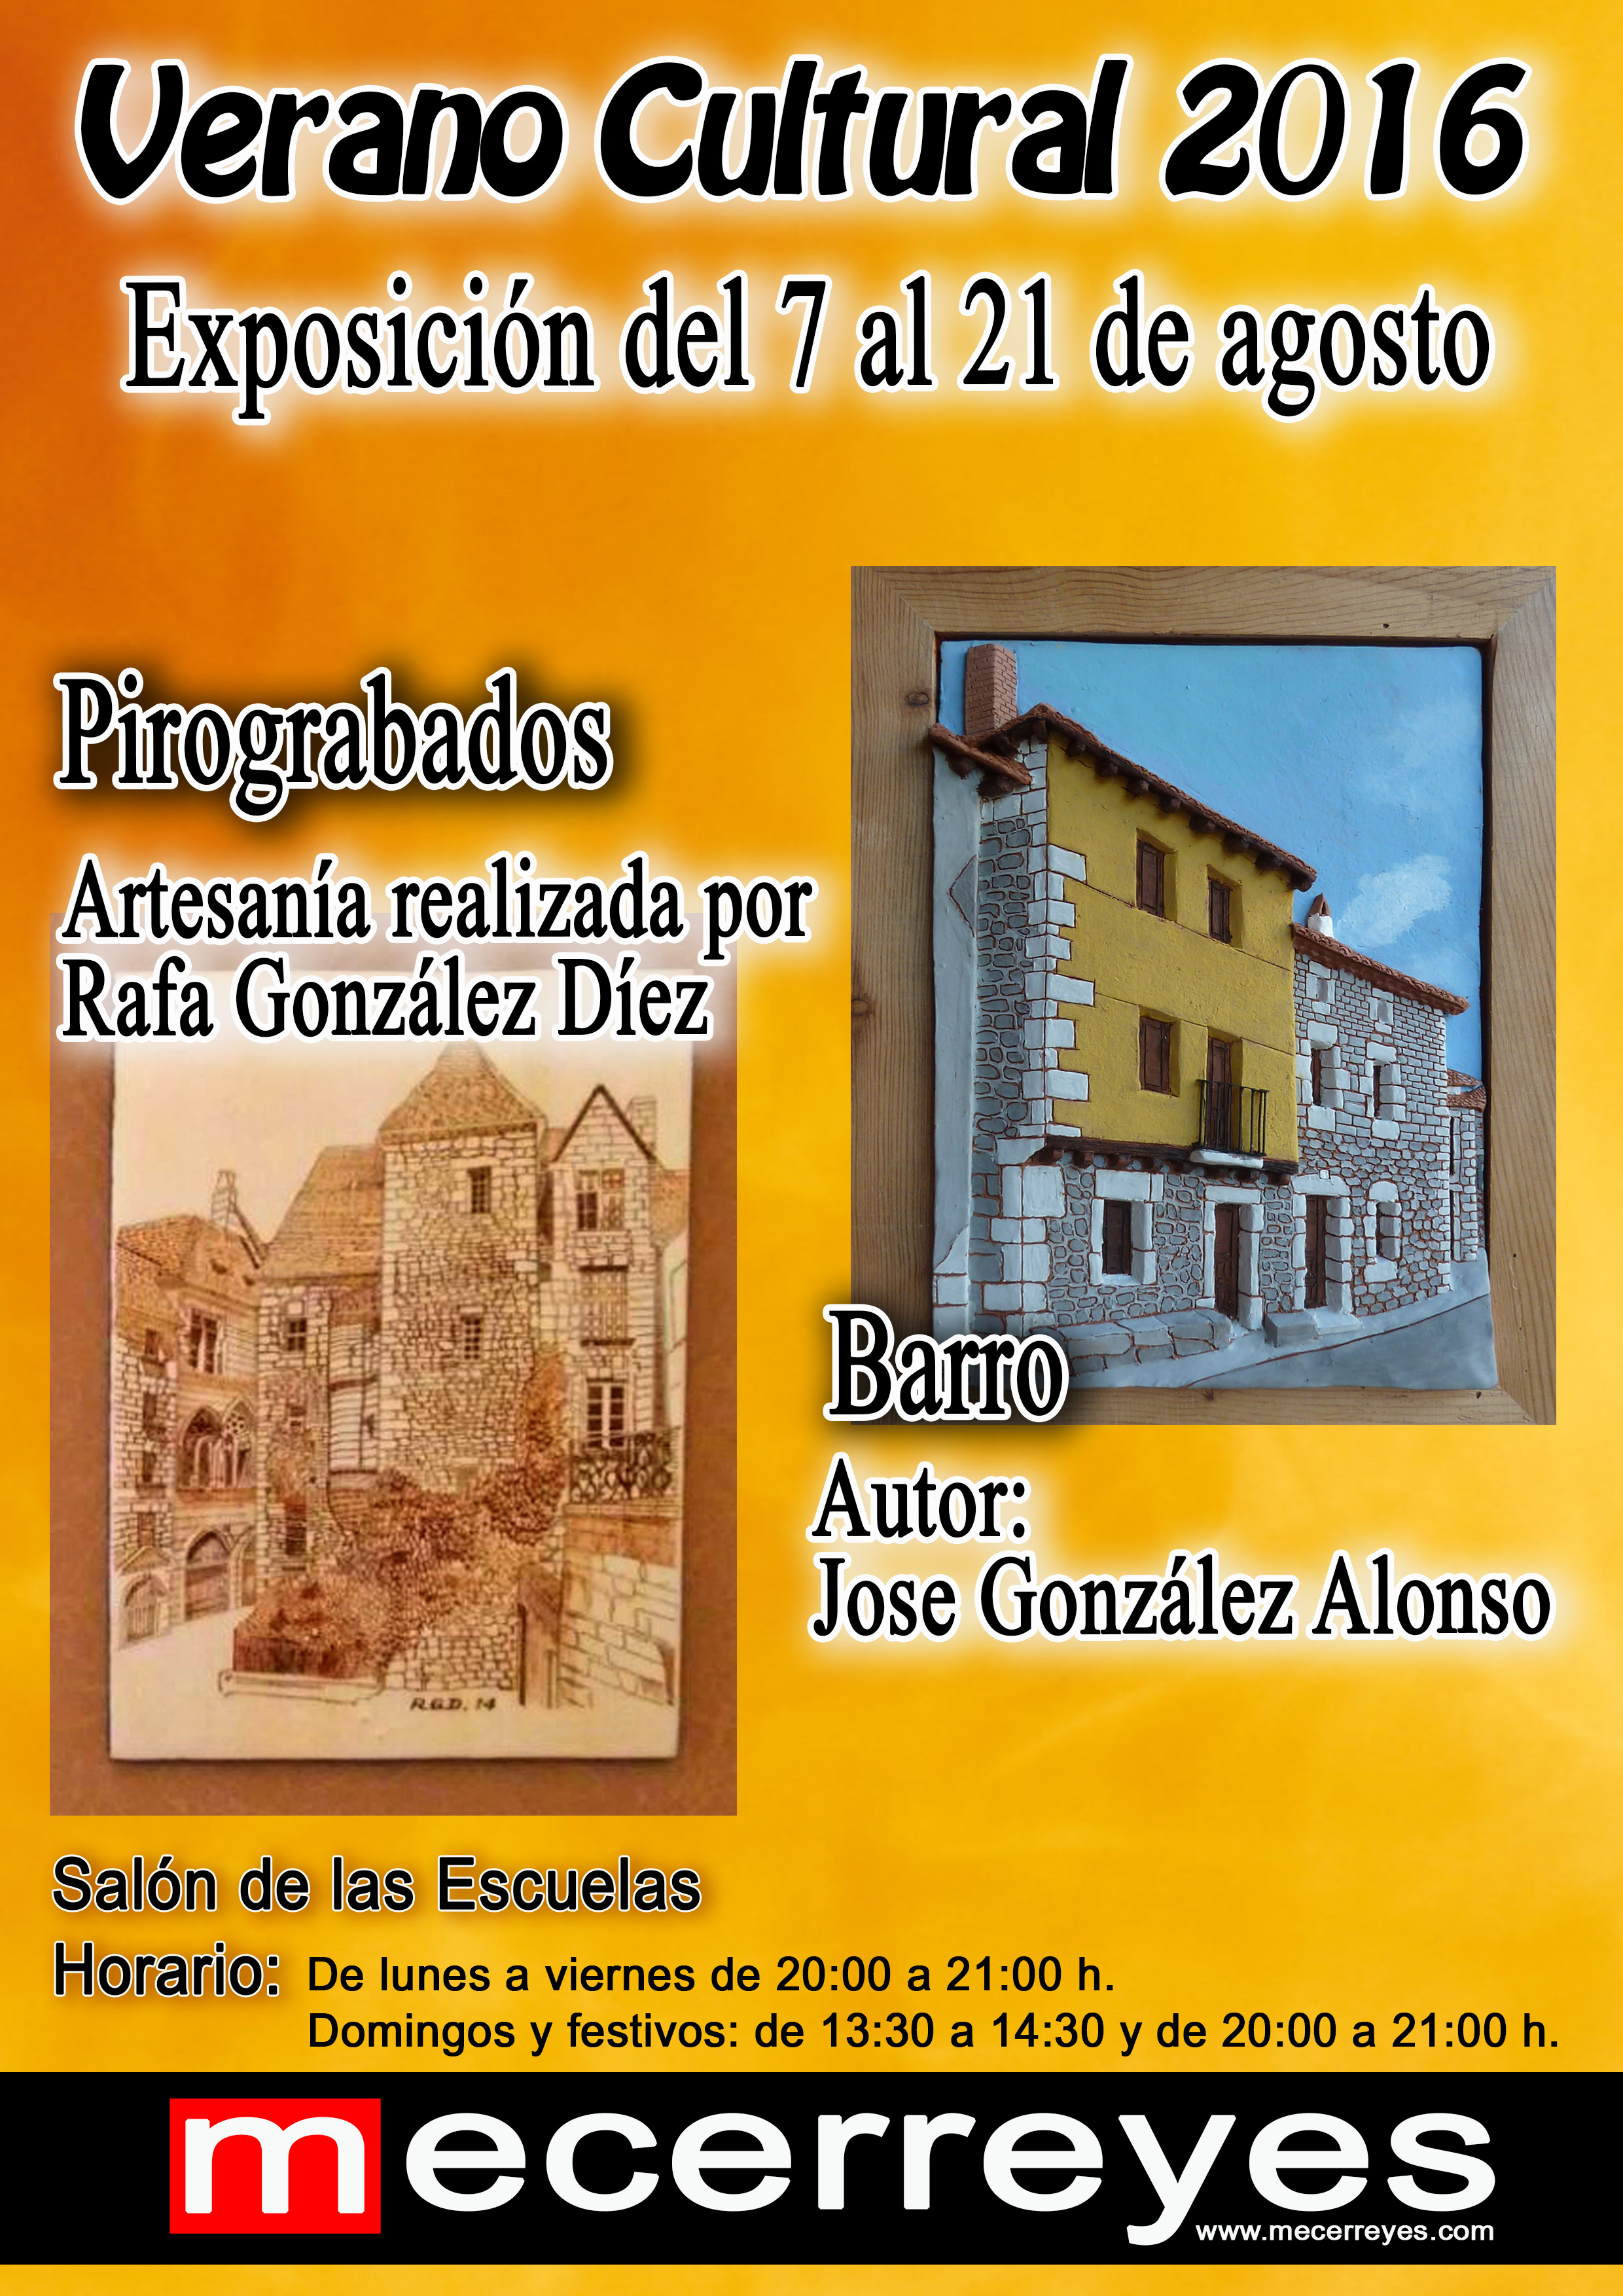 Mecerreyes Verano Cultural 2016-Exposición Barro, Jose y Pirograbados Rafa